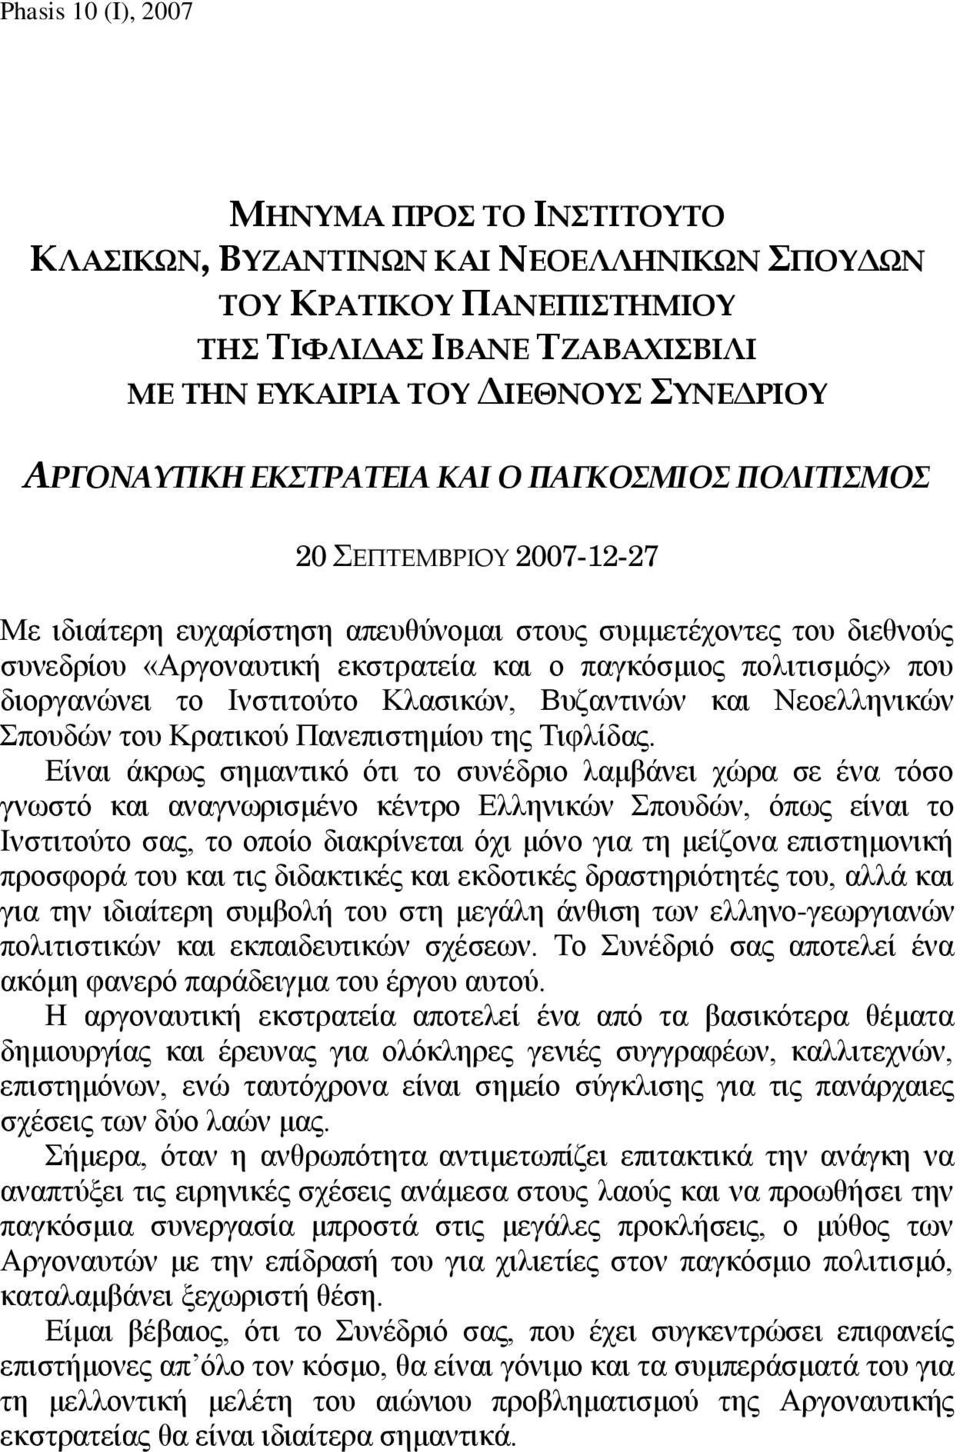 Ινστιτούτο Κλασικών, Βυζαντινών και Νεοελληνικών Σπουδών του Κρατικού Πανεπιστημίου της Τιφλίδας.